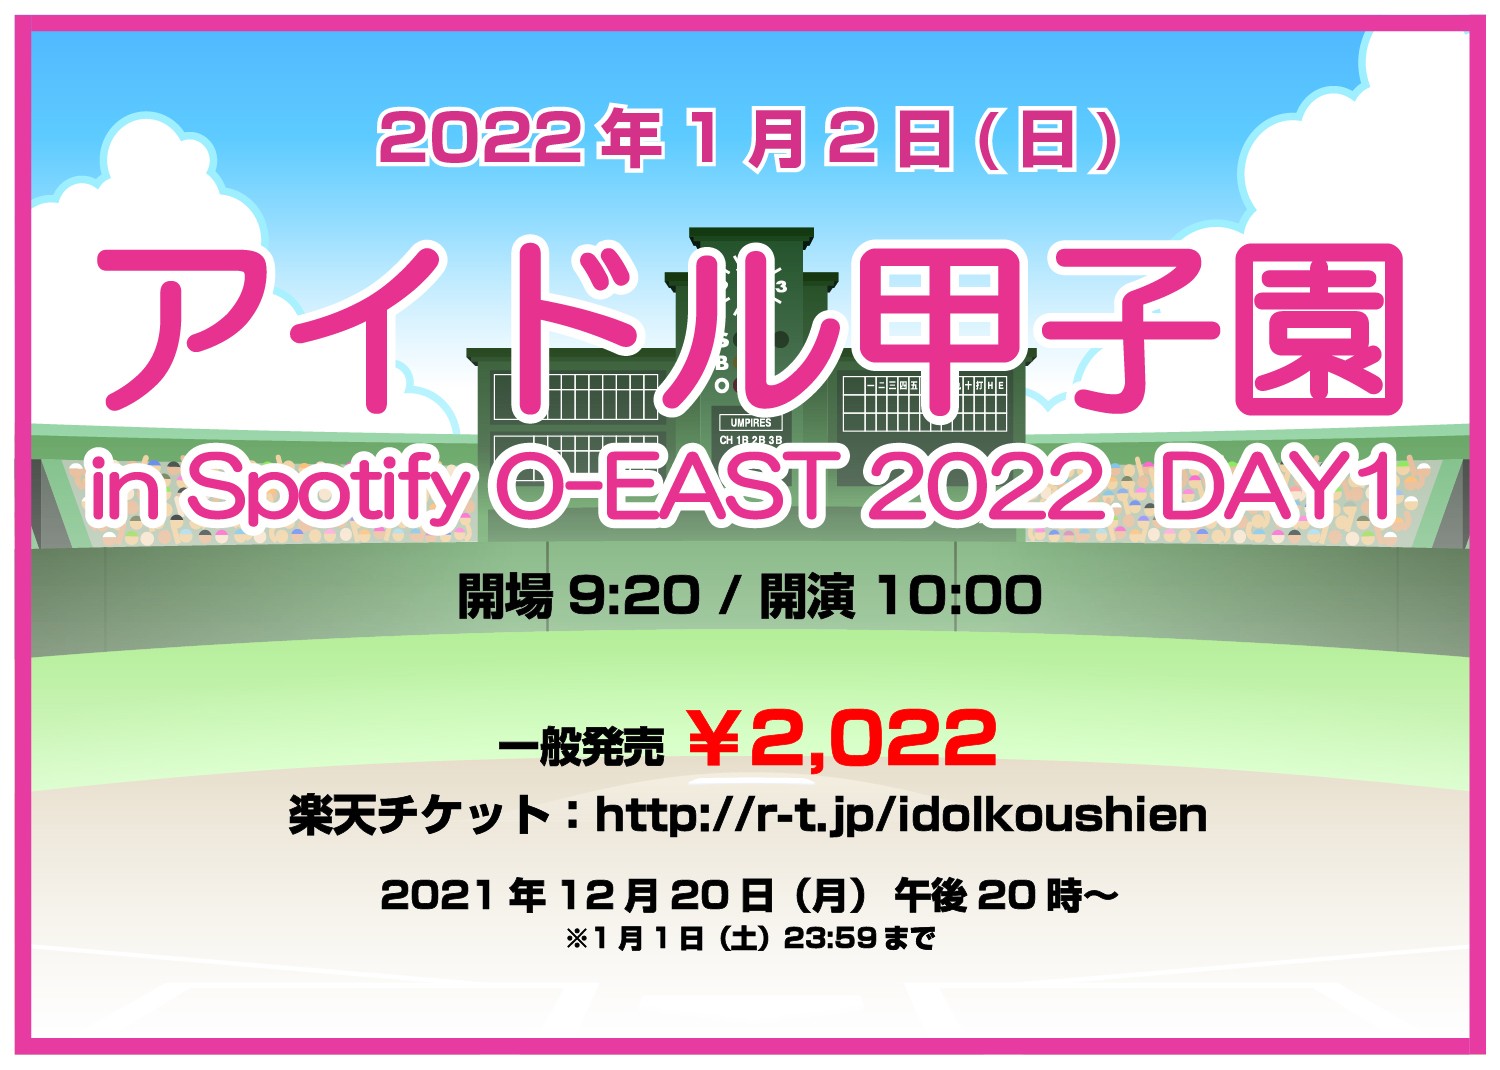 「アイドル甲子園 in Spotify O-EAST 2022」DAY1